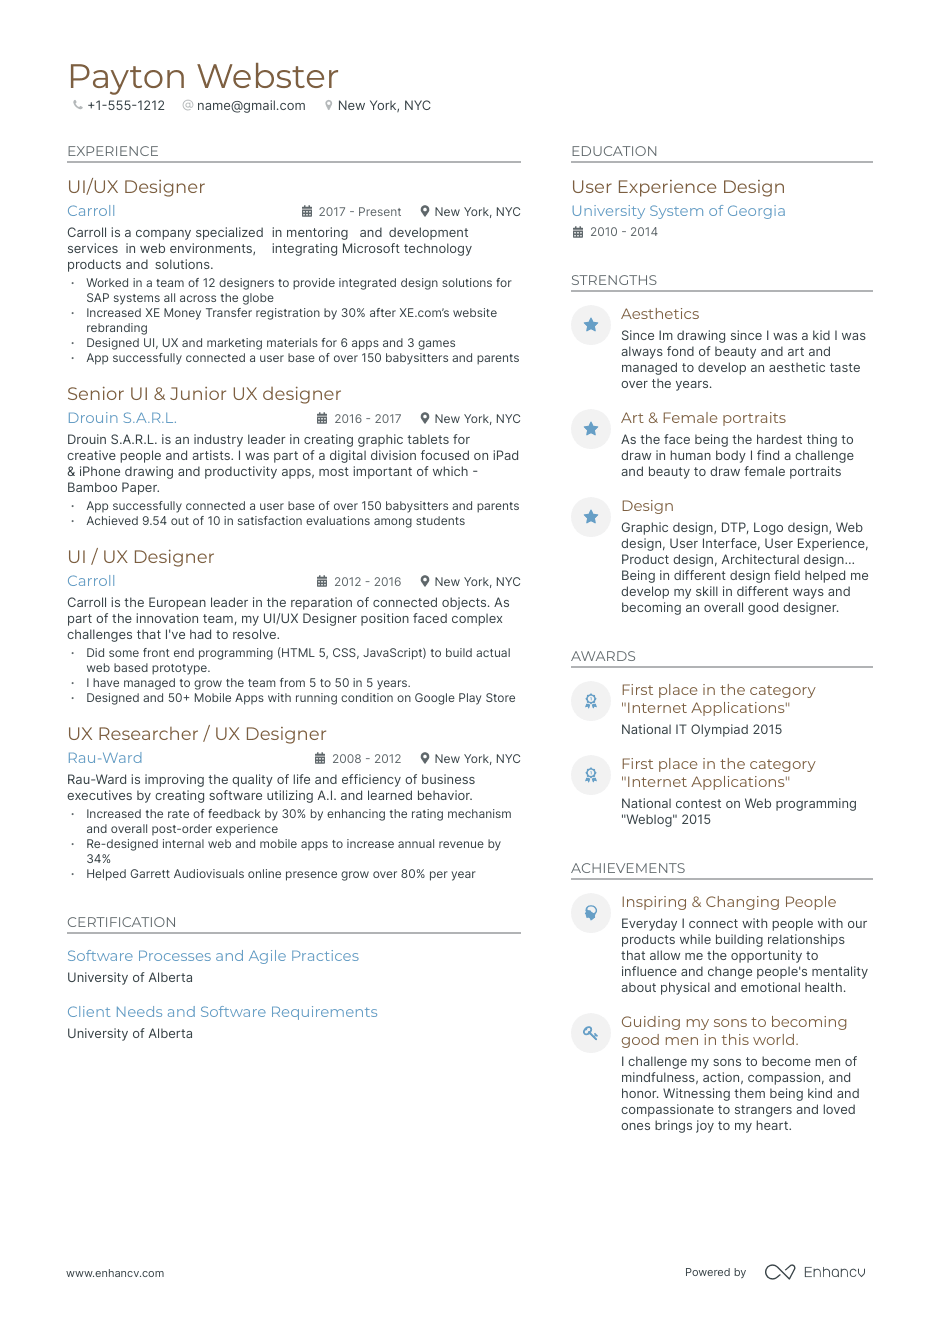 UI Designer resume example